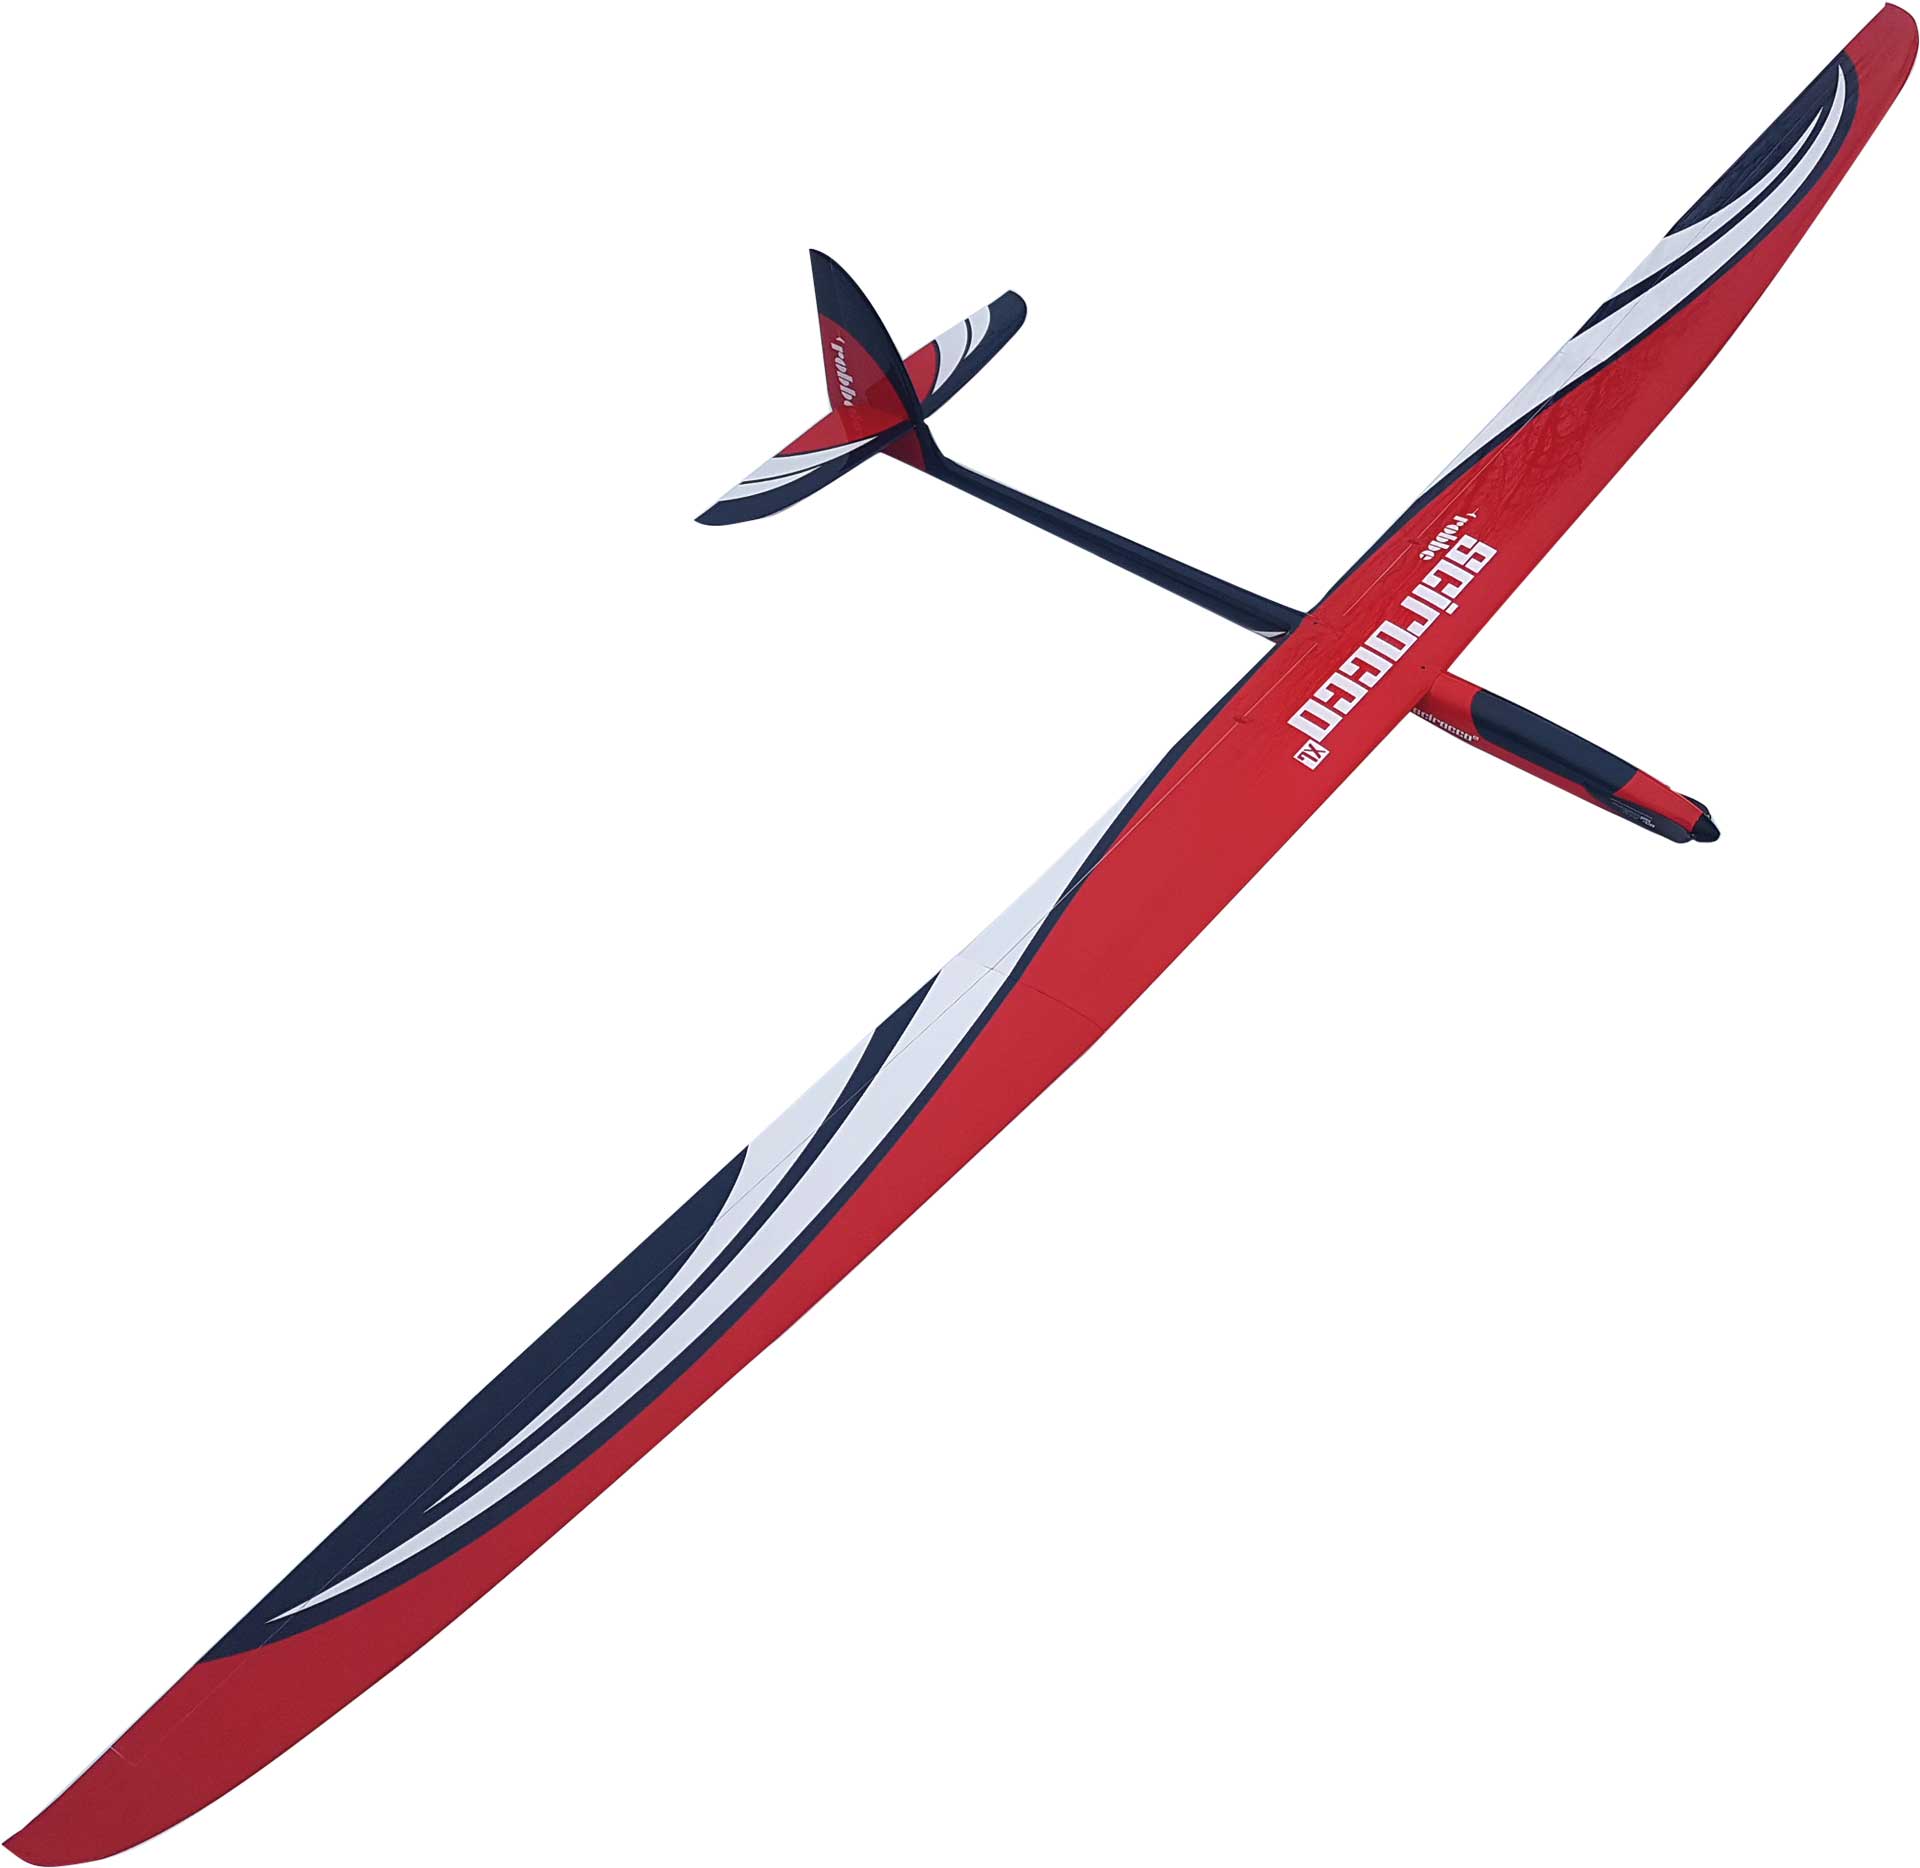 Robbe Modellsport SCIROCCO XL 4,5M ARF (rouge) plein-gris Planeur haute performance avec aile à 4 volets